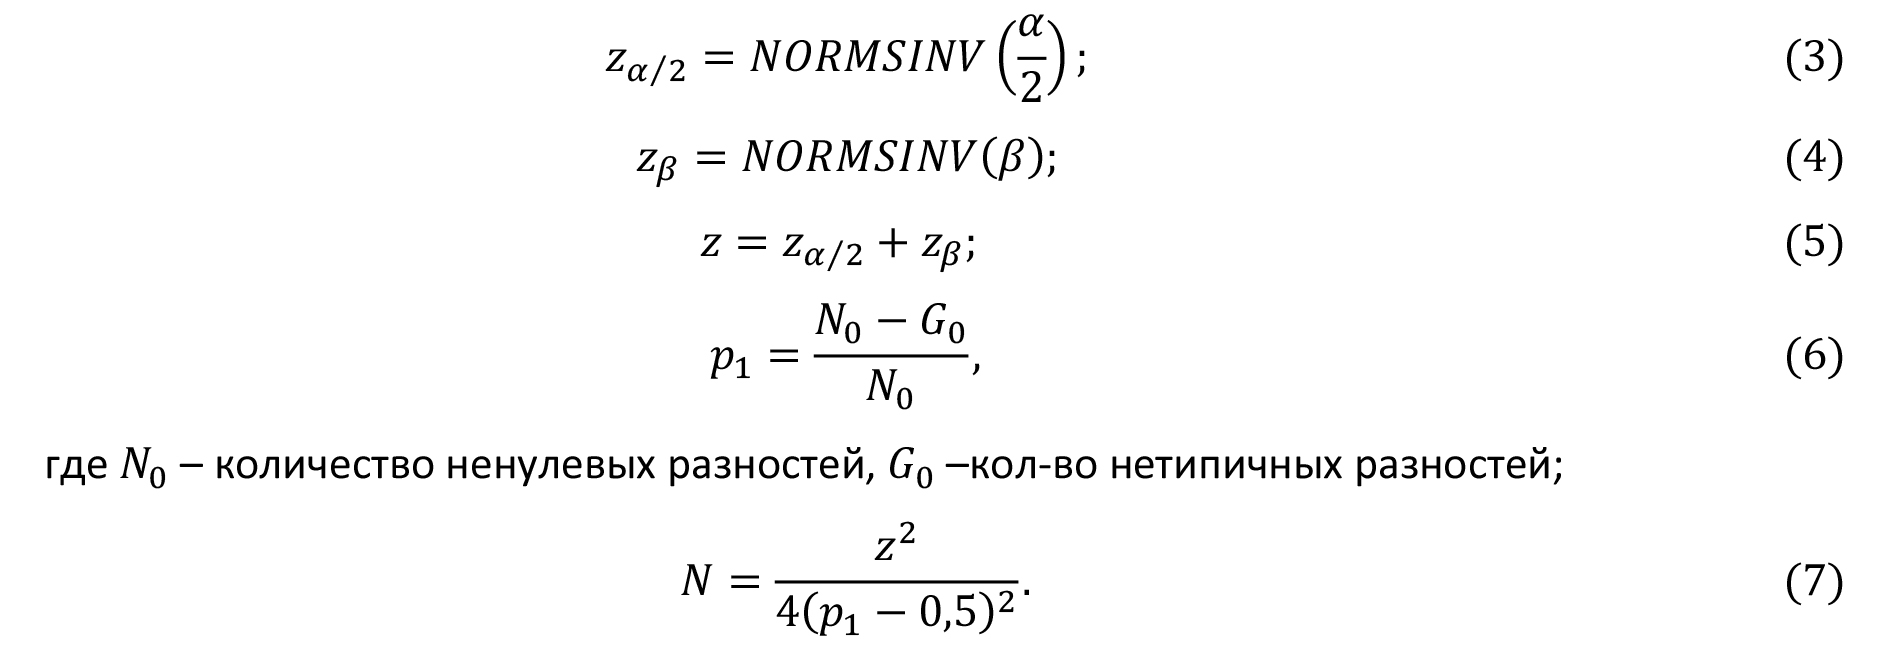 формулы 3, 4, 5, 6, 7